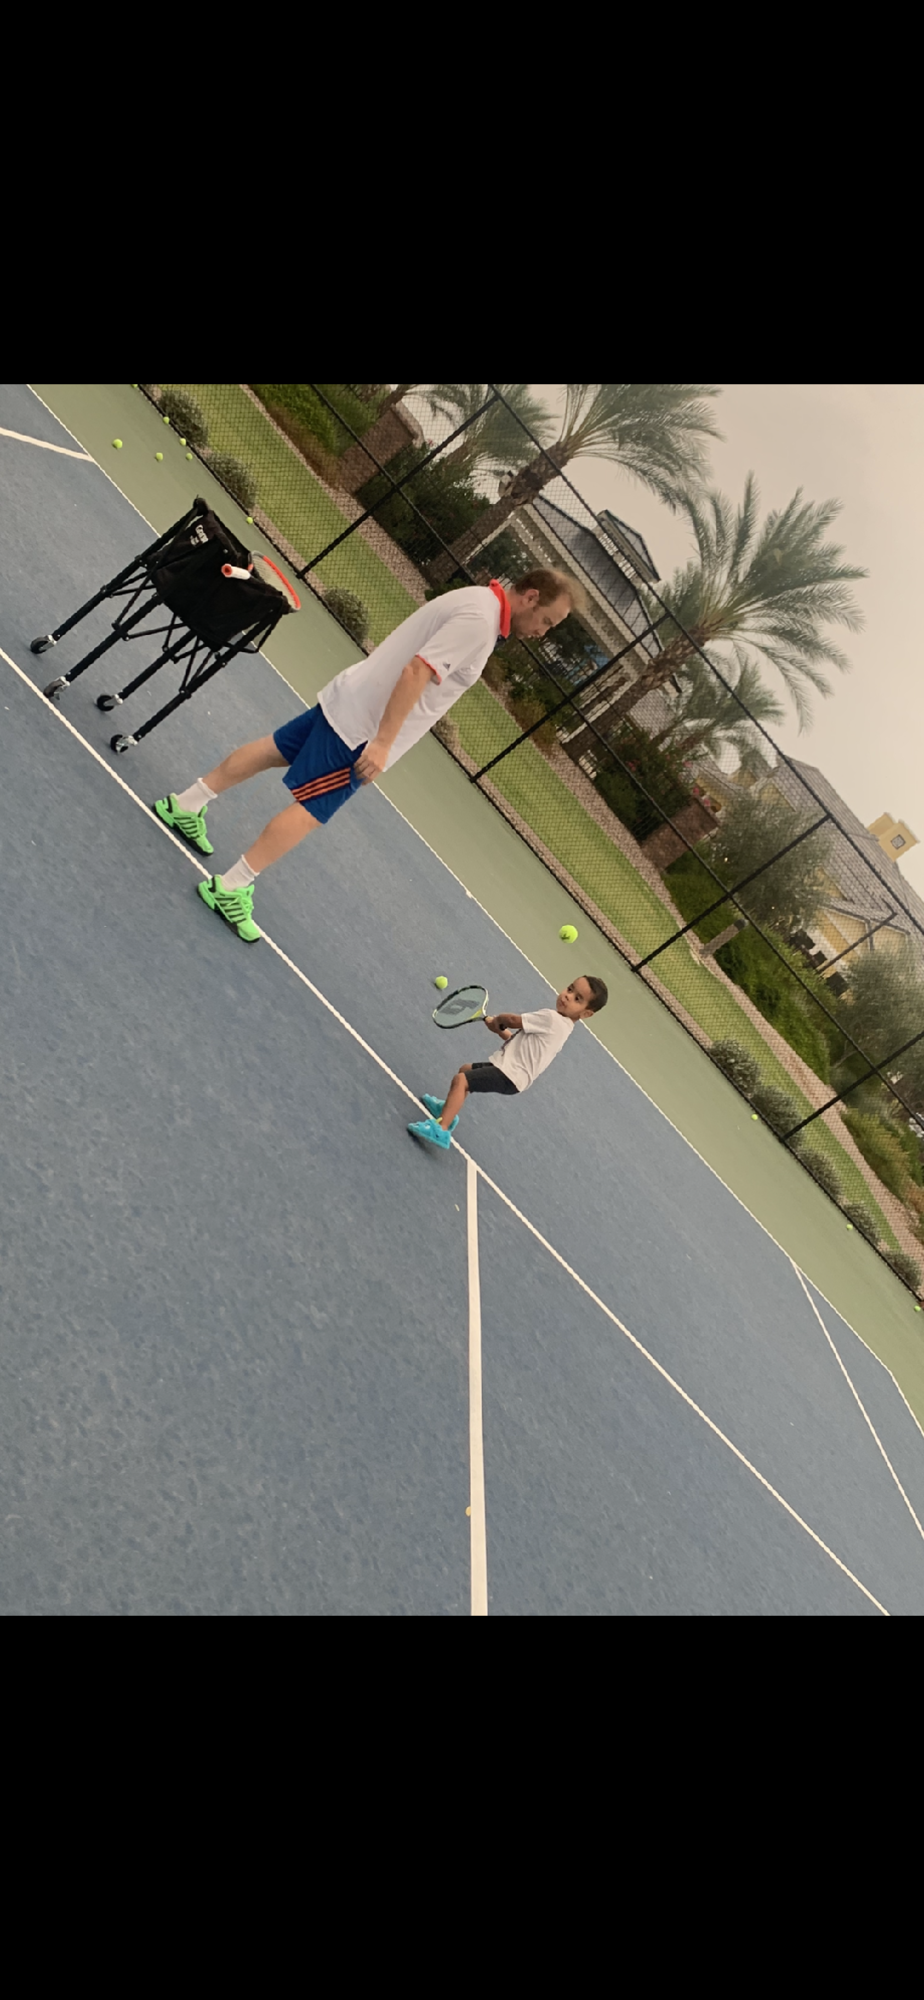 Mike T. teaches tennis lessons in Mesa, AZ